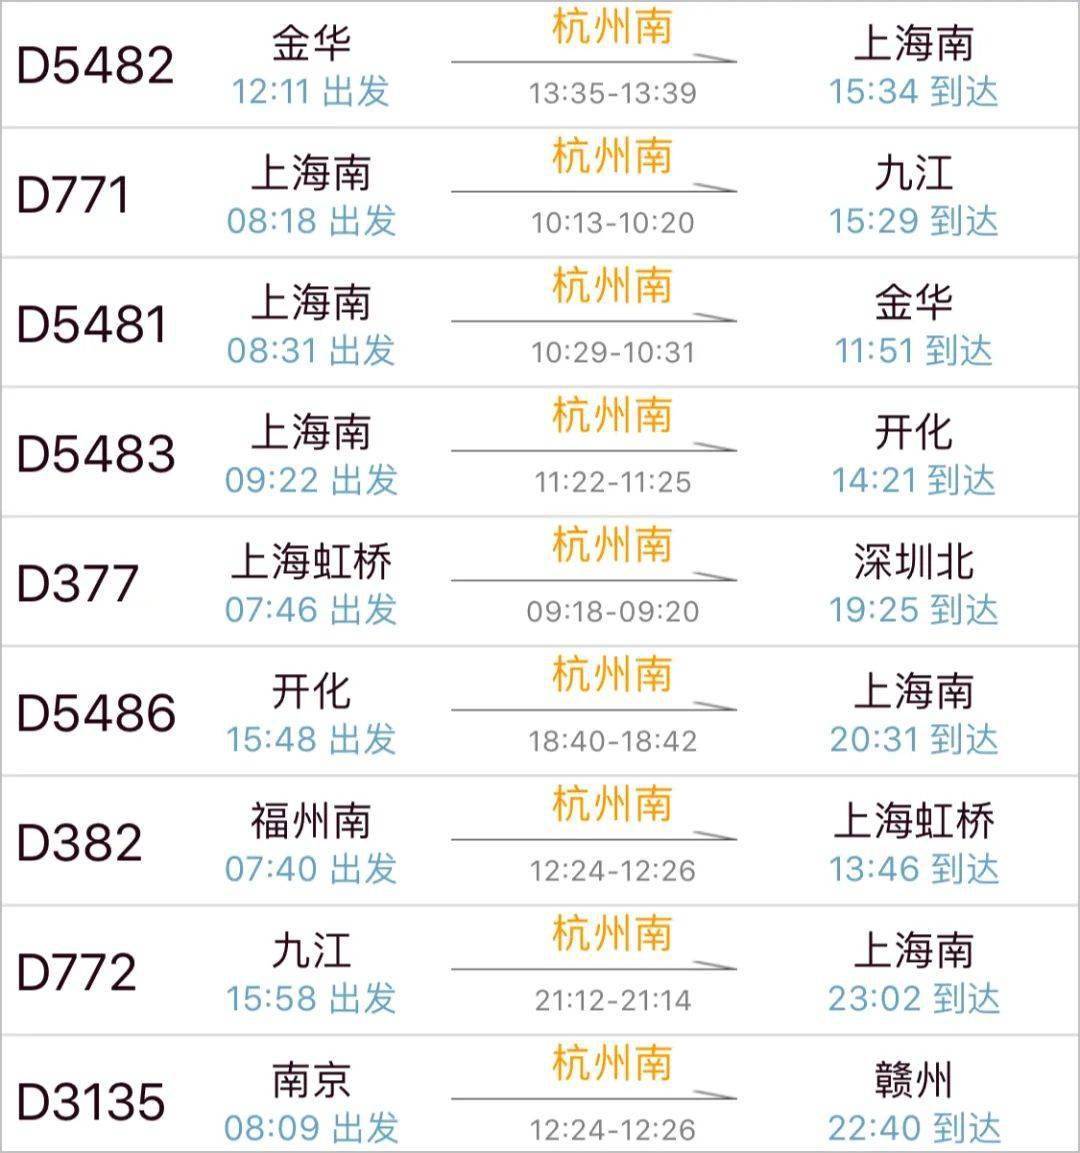 同时,上海到杭州南站的火车票也已经可以购买